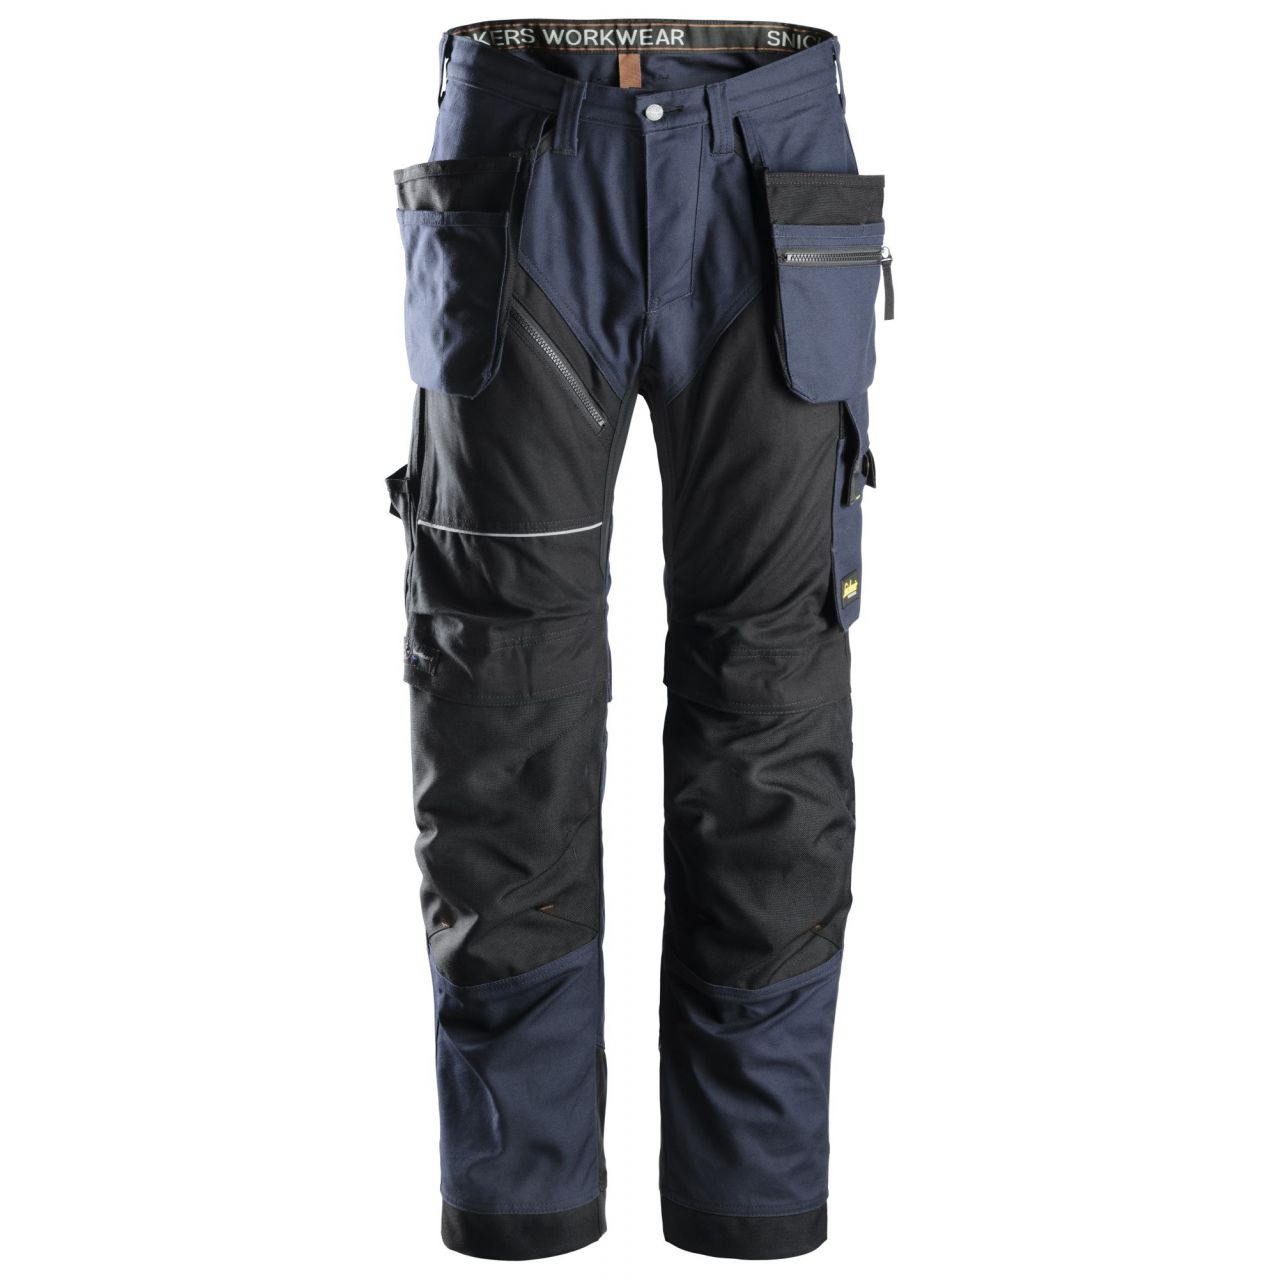 6215 Pantalón largo RuffWork Algodón con bolsillos flotantes azul marino-negro talla 116